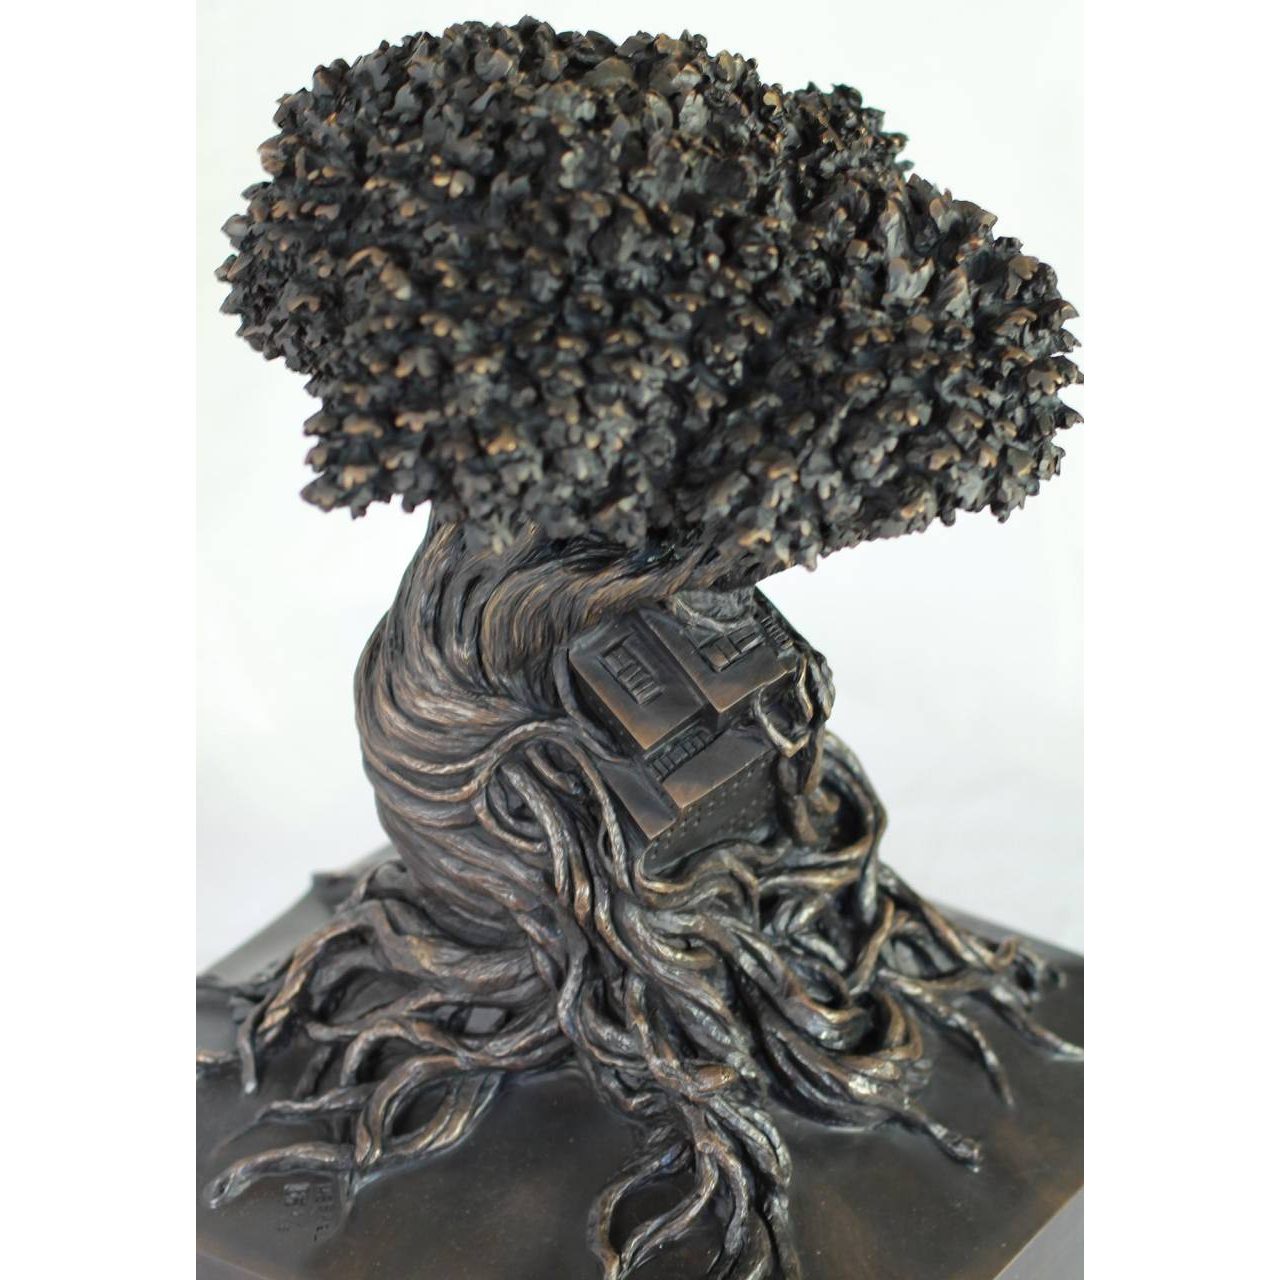 HERREL, Co-existence, bronze, 48 x 30 x 30 cm